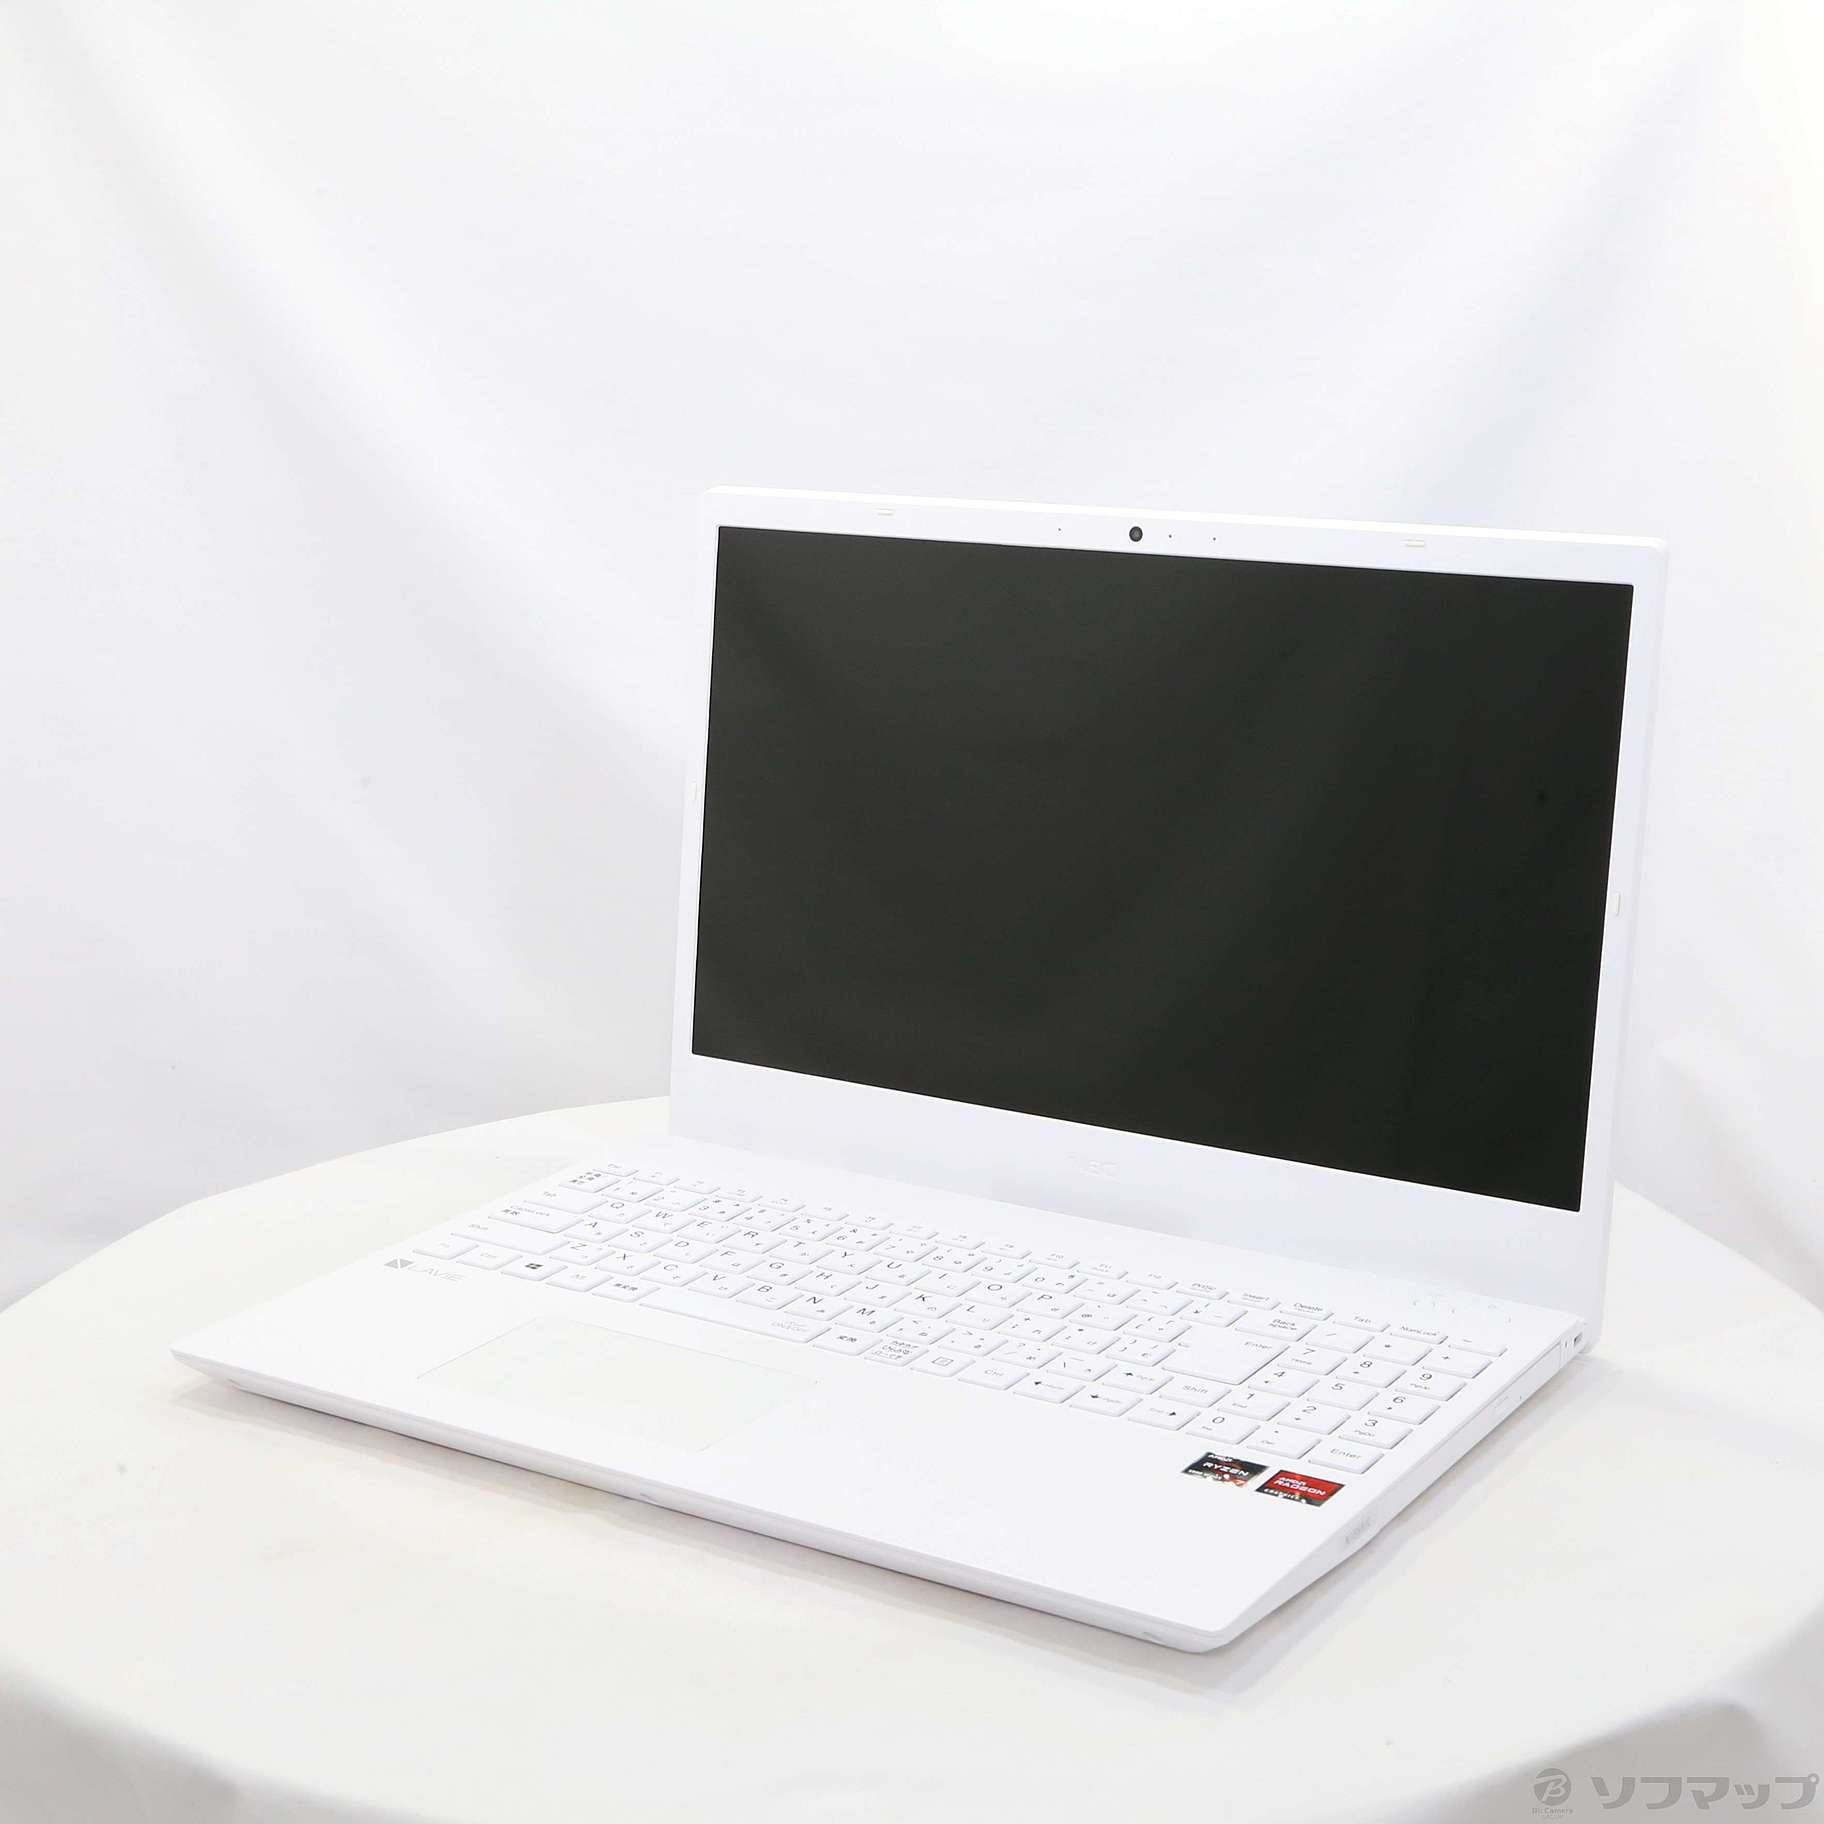 ノートパソコン LAVIE N15 パールホワイト PC-N1565CAW